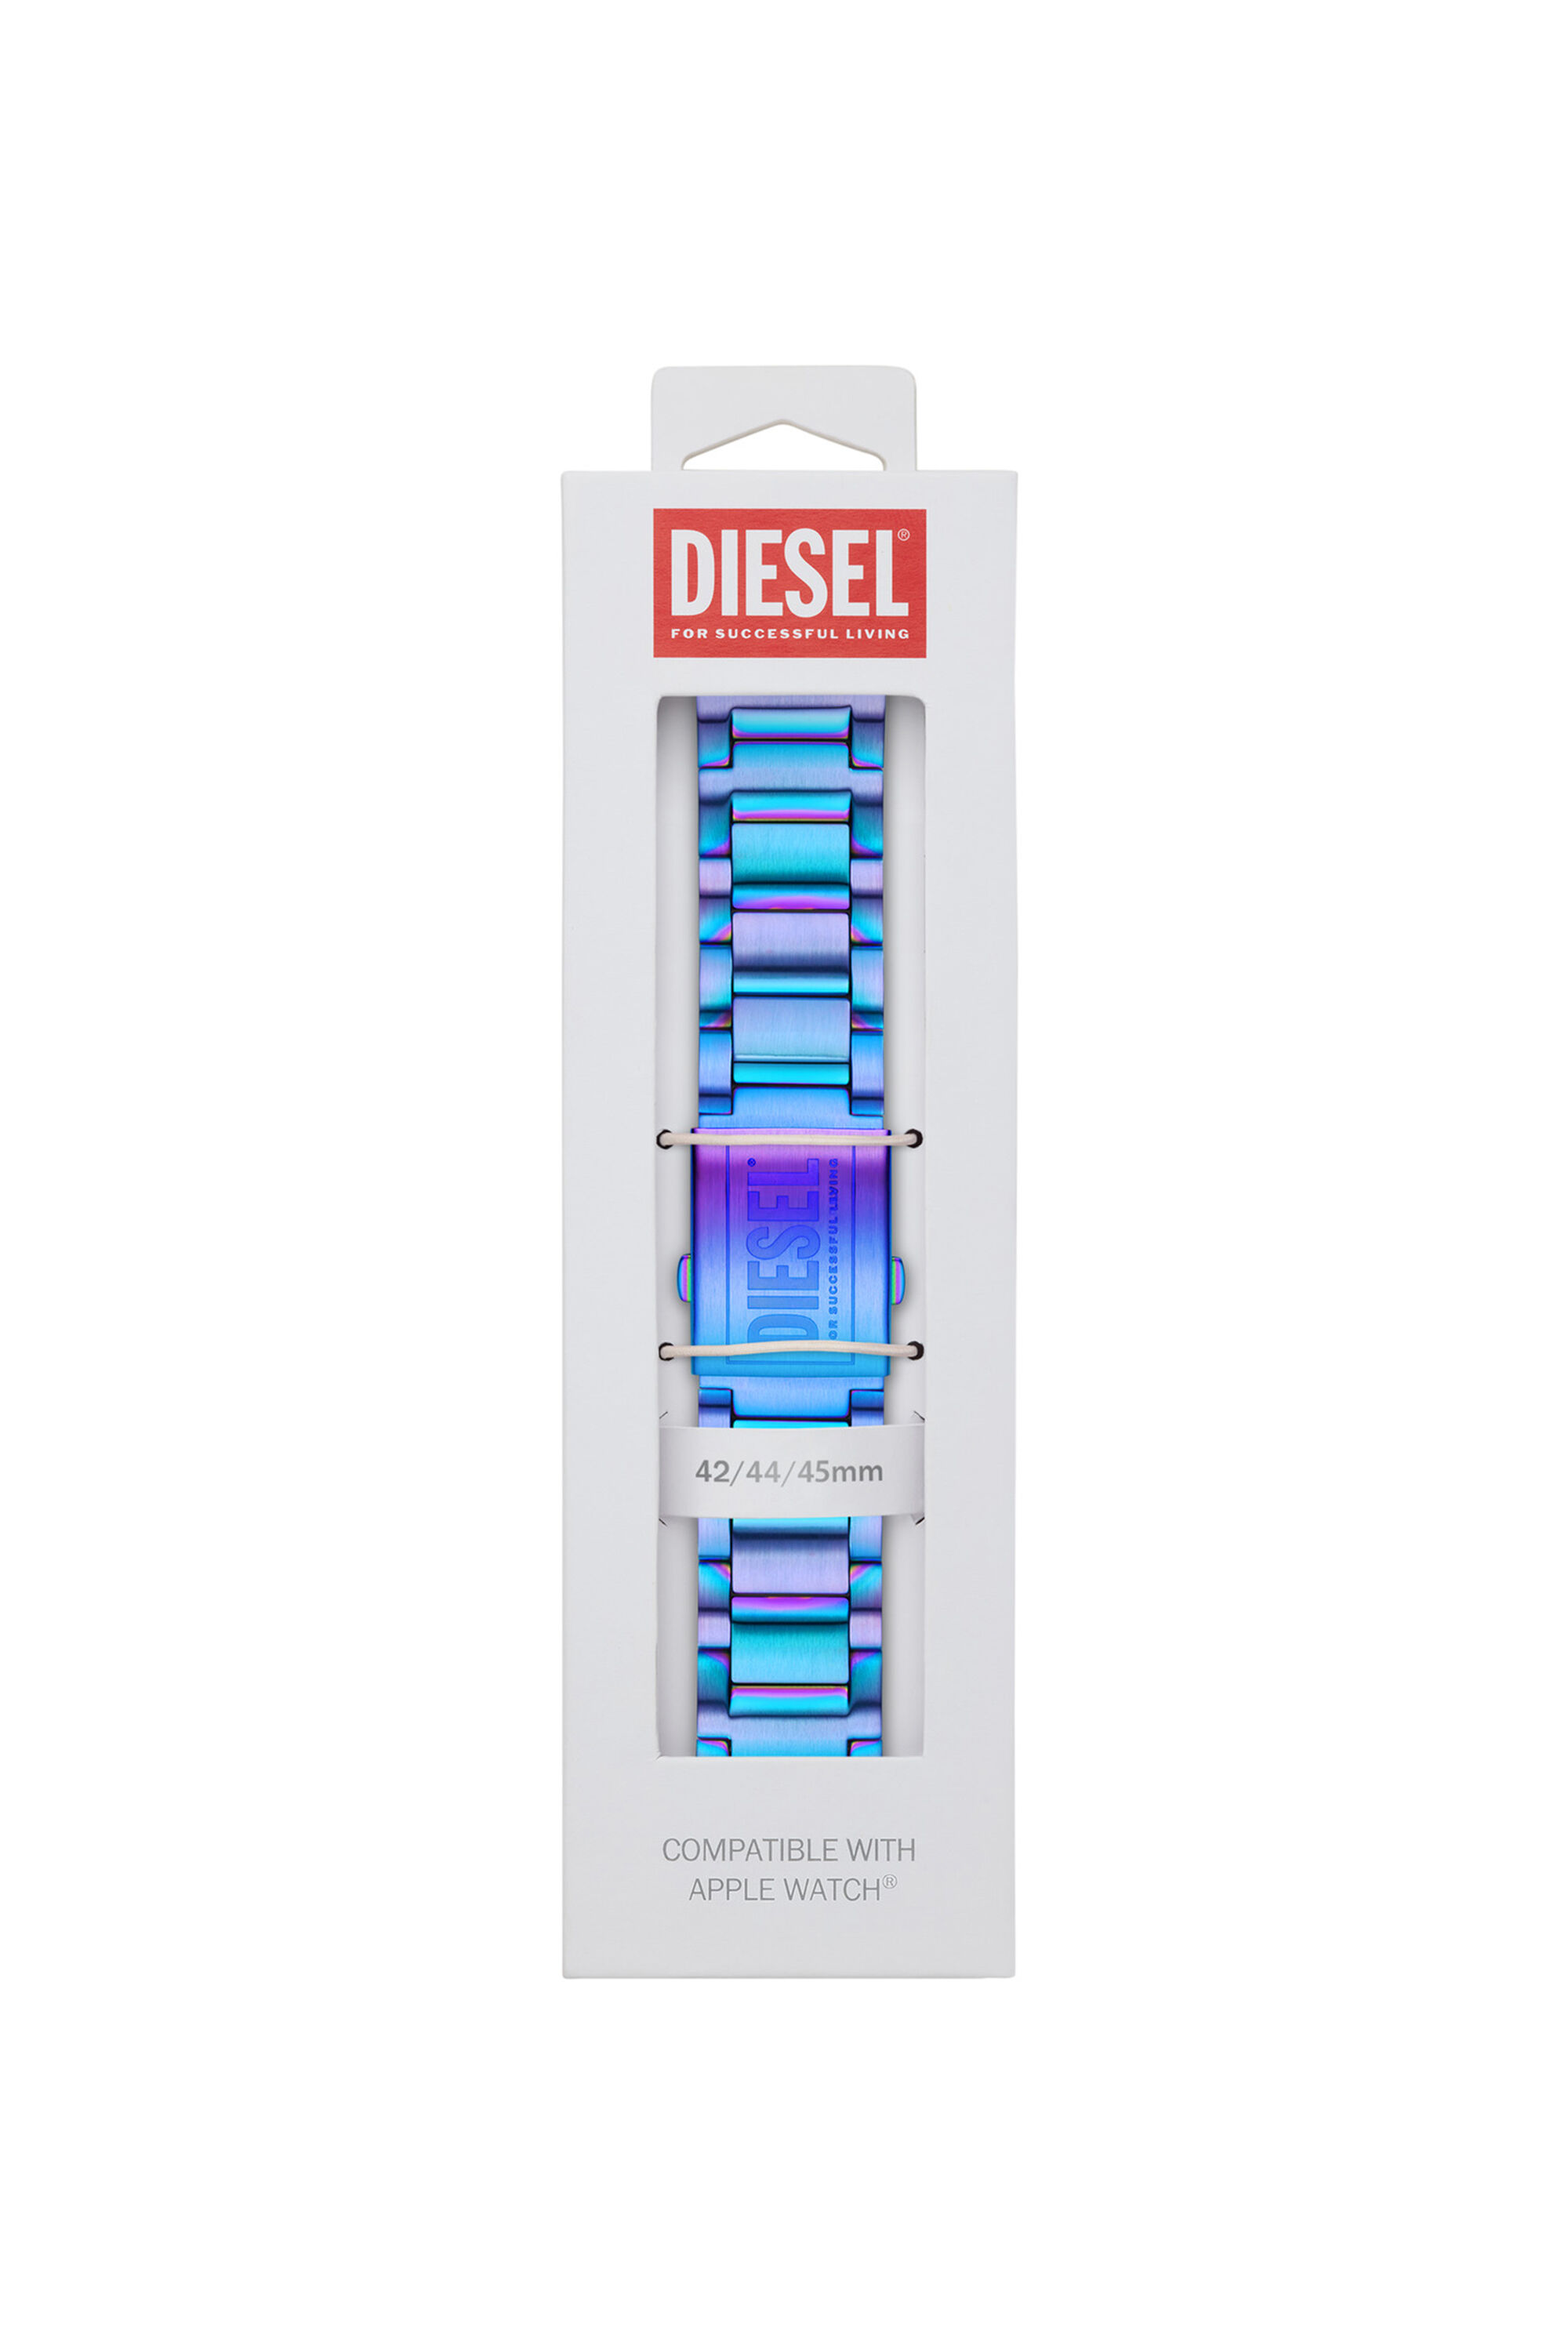 Diesel - DSS007,  - Image 2